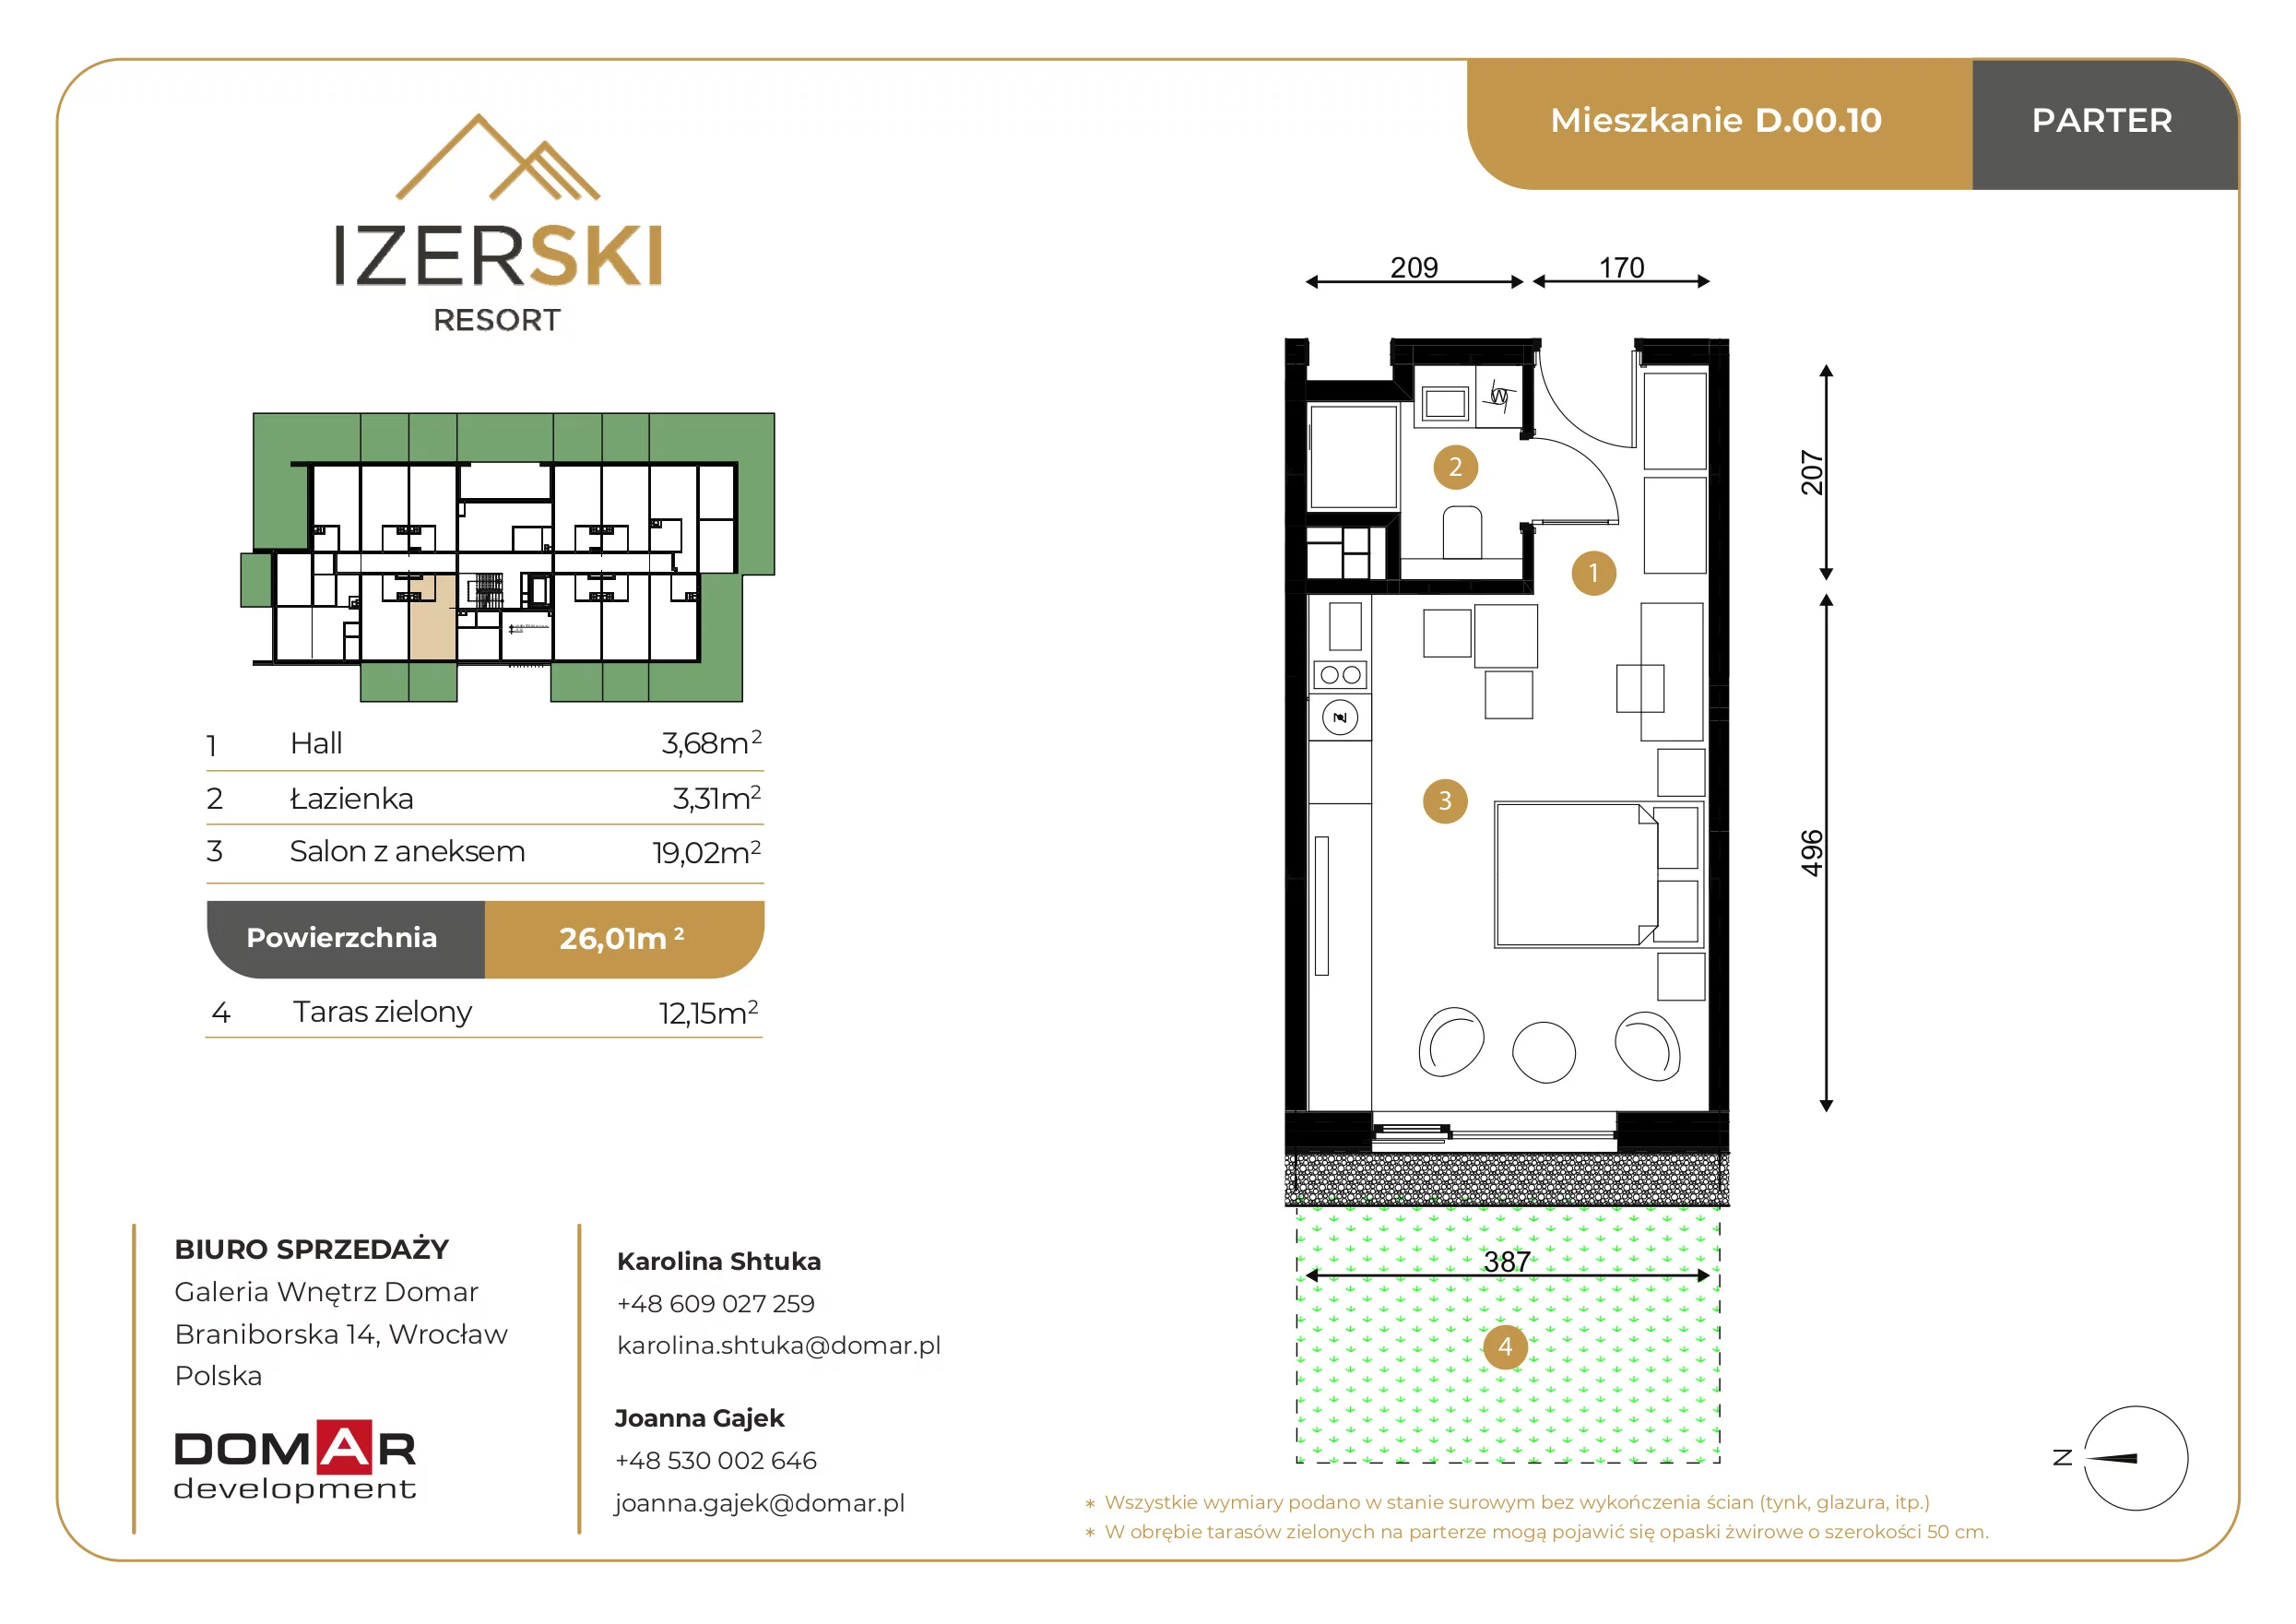 Apartament inwestycyjny 26,01 m², parter, oferta nr D.00.10, IzerSKI Resort, Świeradów-Zdrój, ul. Jana Kilińskiego 2